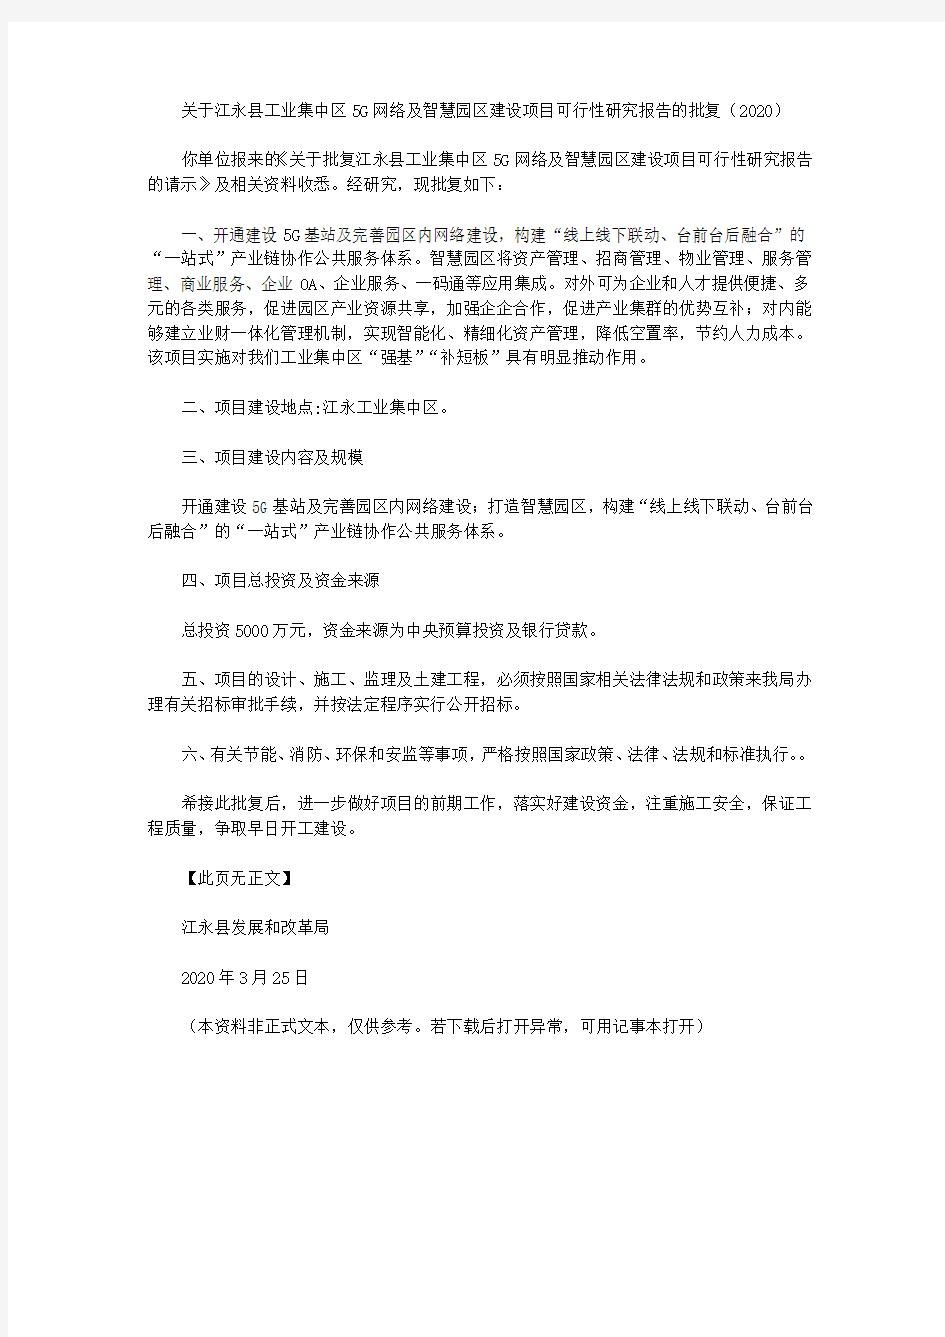 关于江永县工业集中区5G网络及智慧园区建设项目可行性研究报告的批复(2020)